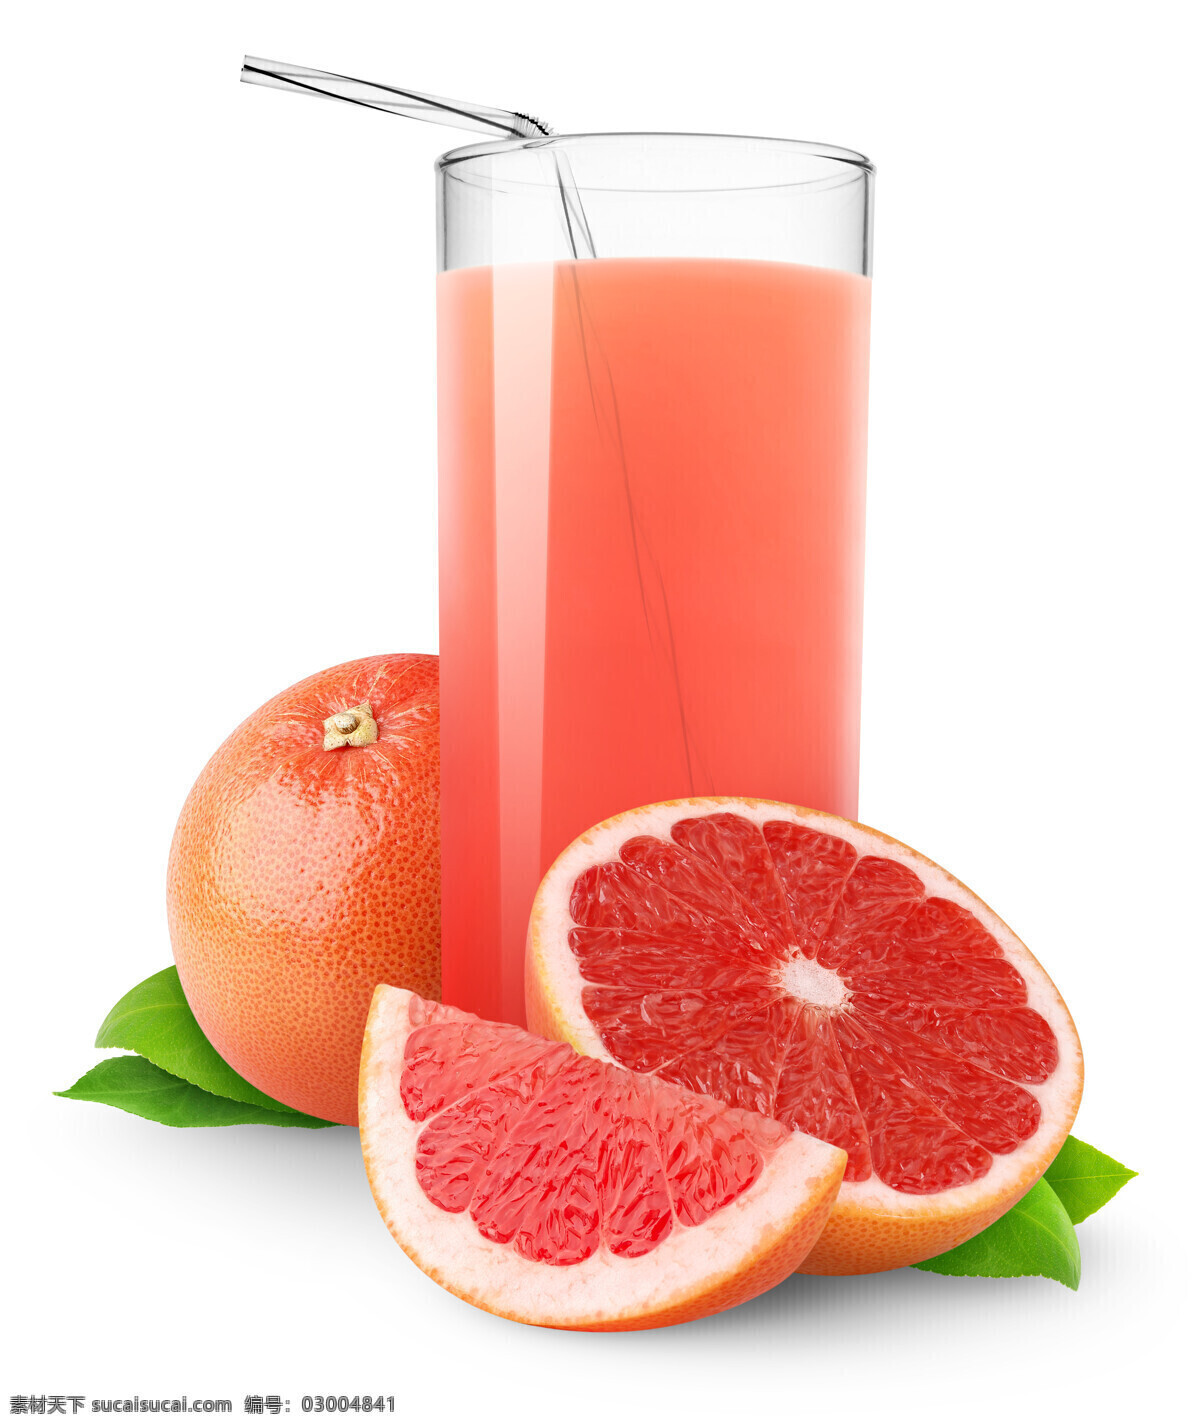 西柚汁 柚子汁 橙汁 水果 果汁 饮品 饮料酒水 果汁饮料 餐饮美食